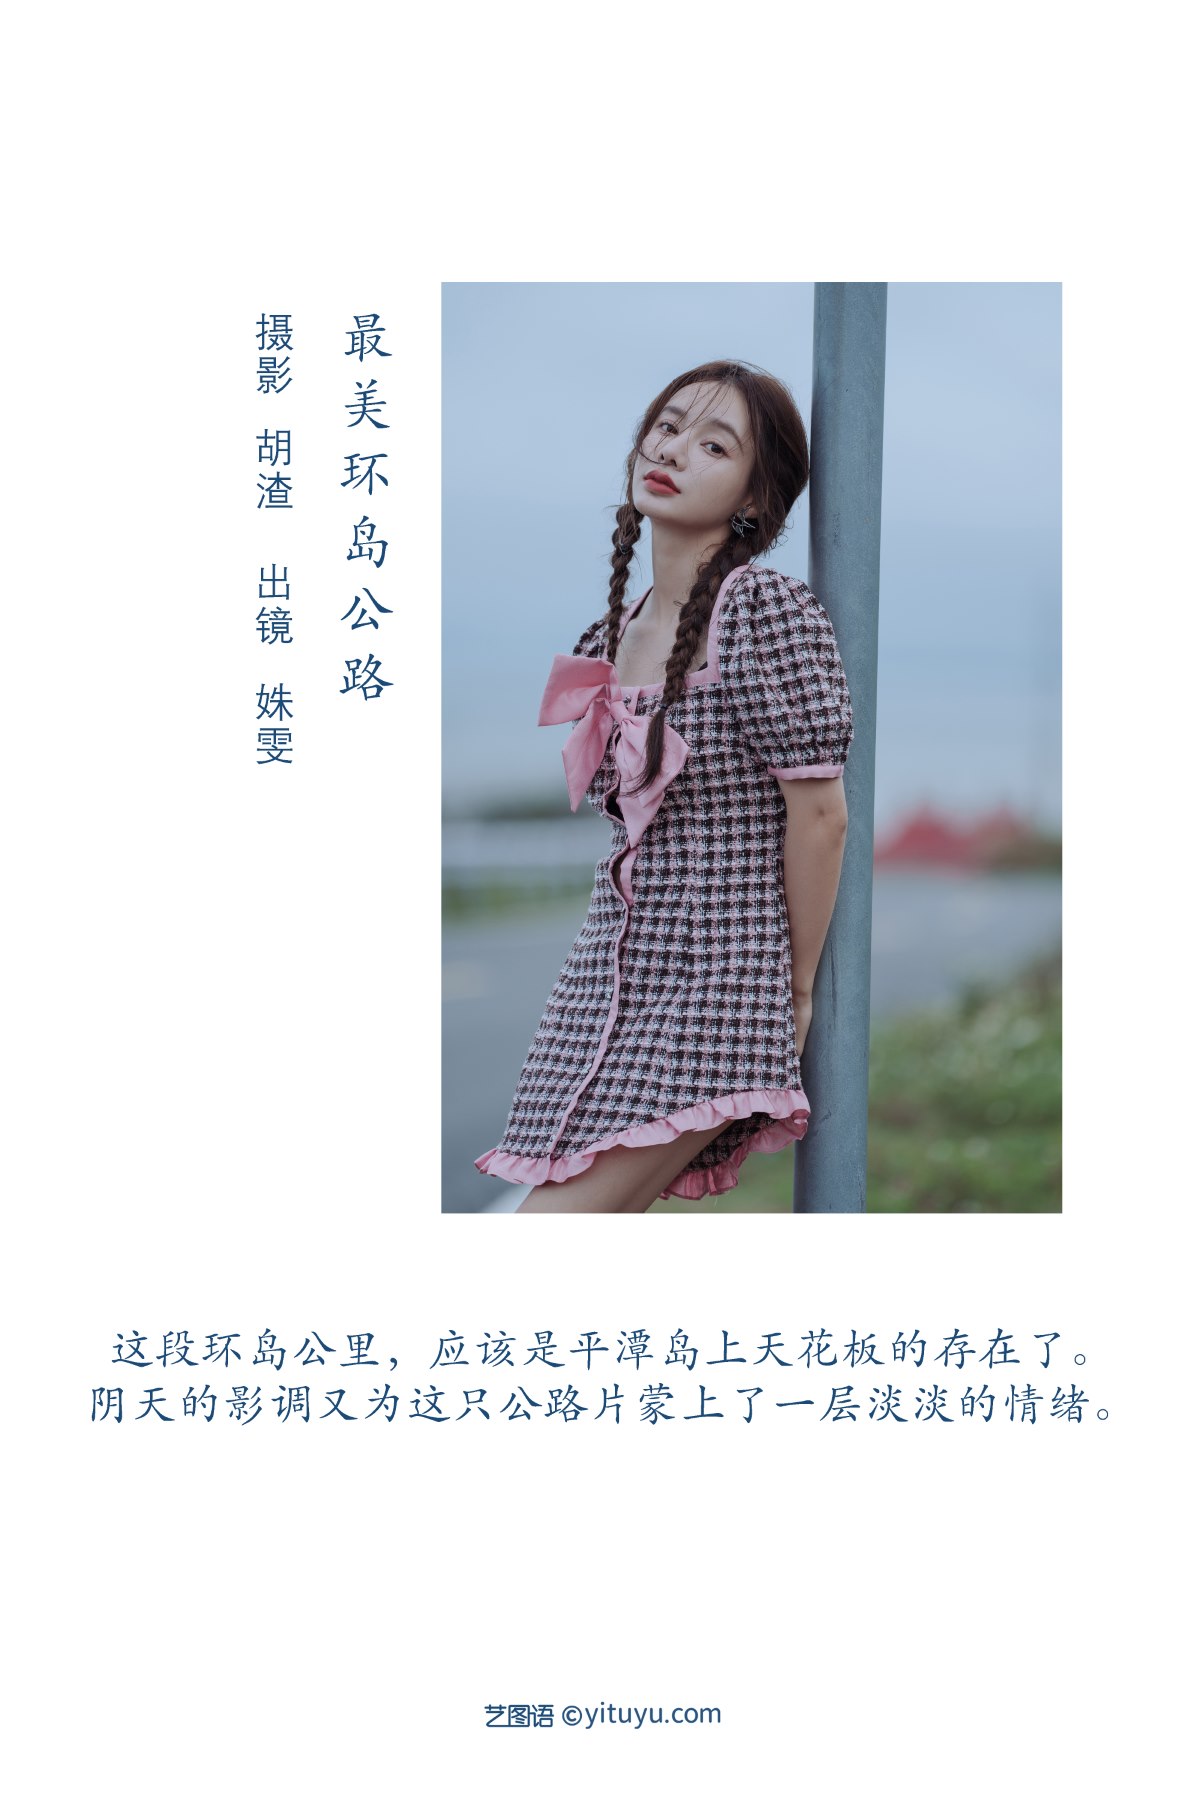 YiTuYu艺图语 Vol 2194 Shu Wen Tong Xue 0001 4748882465.jpg